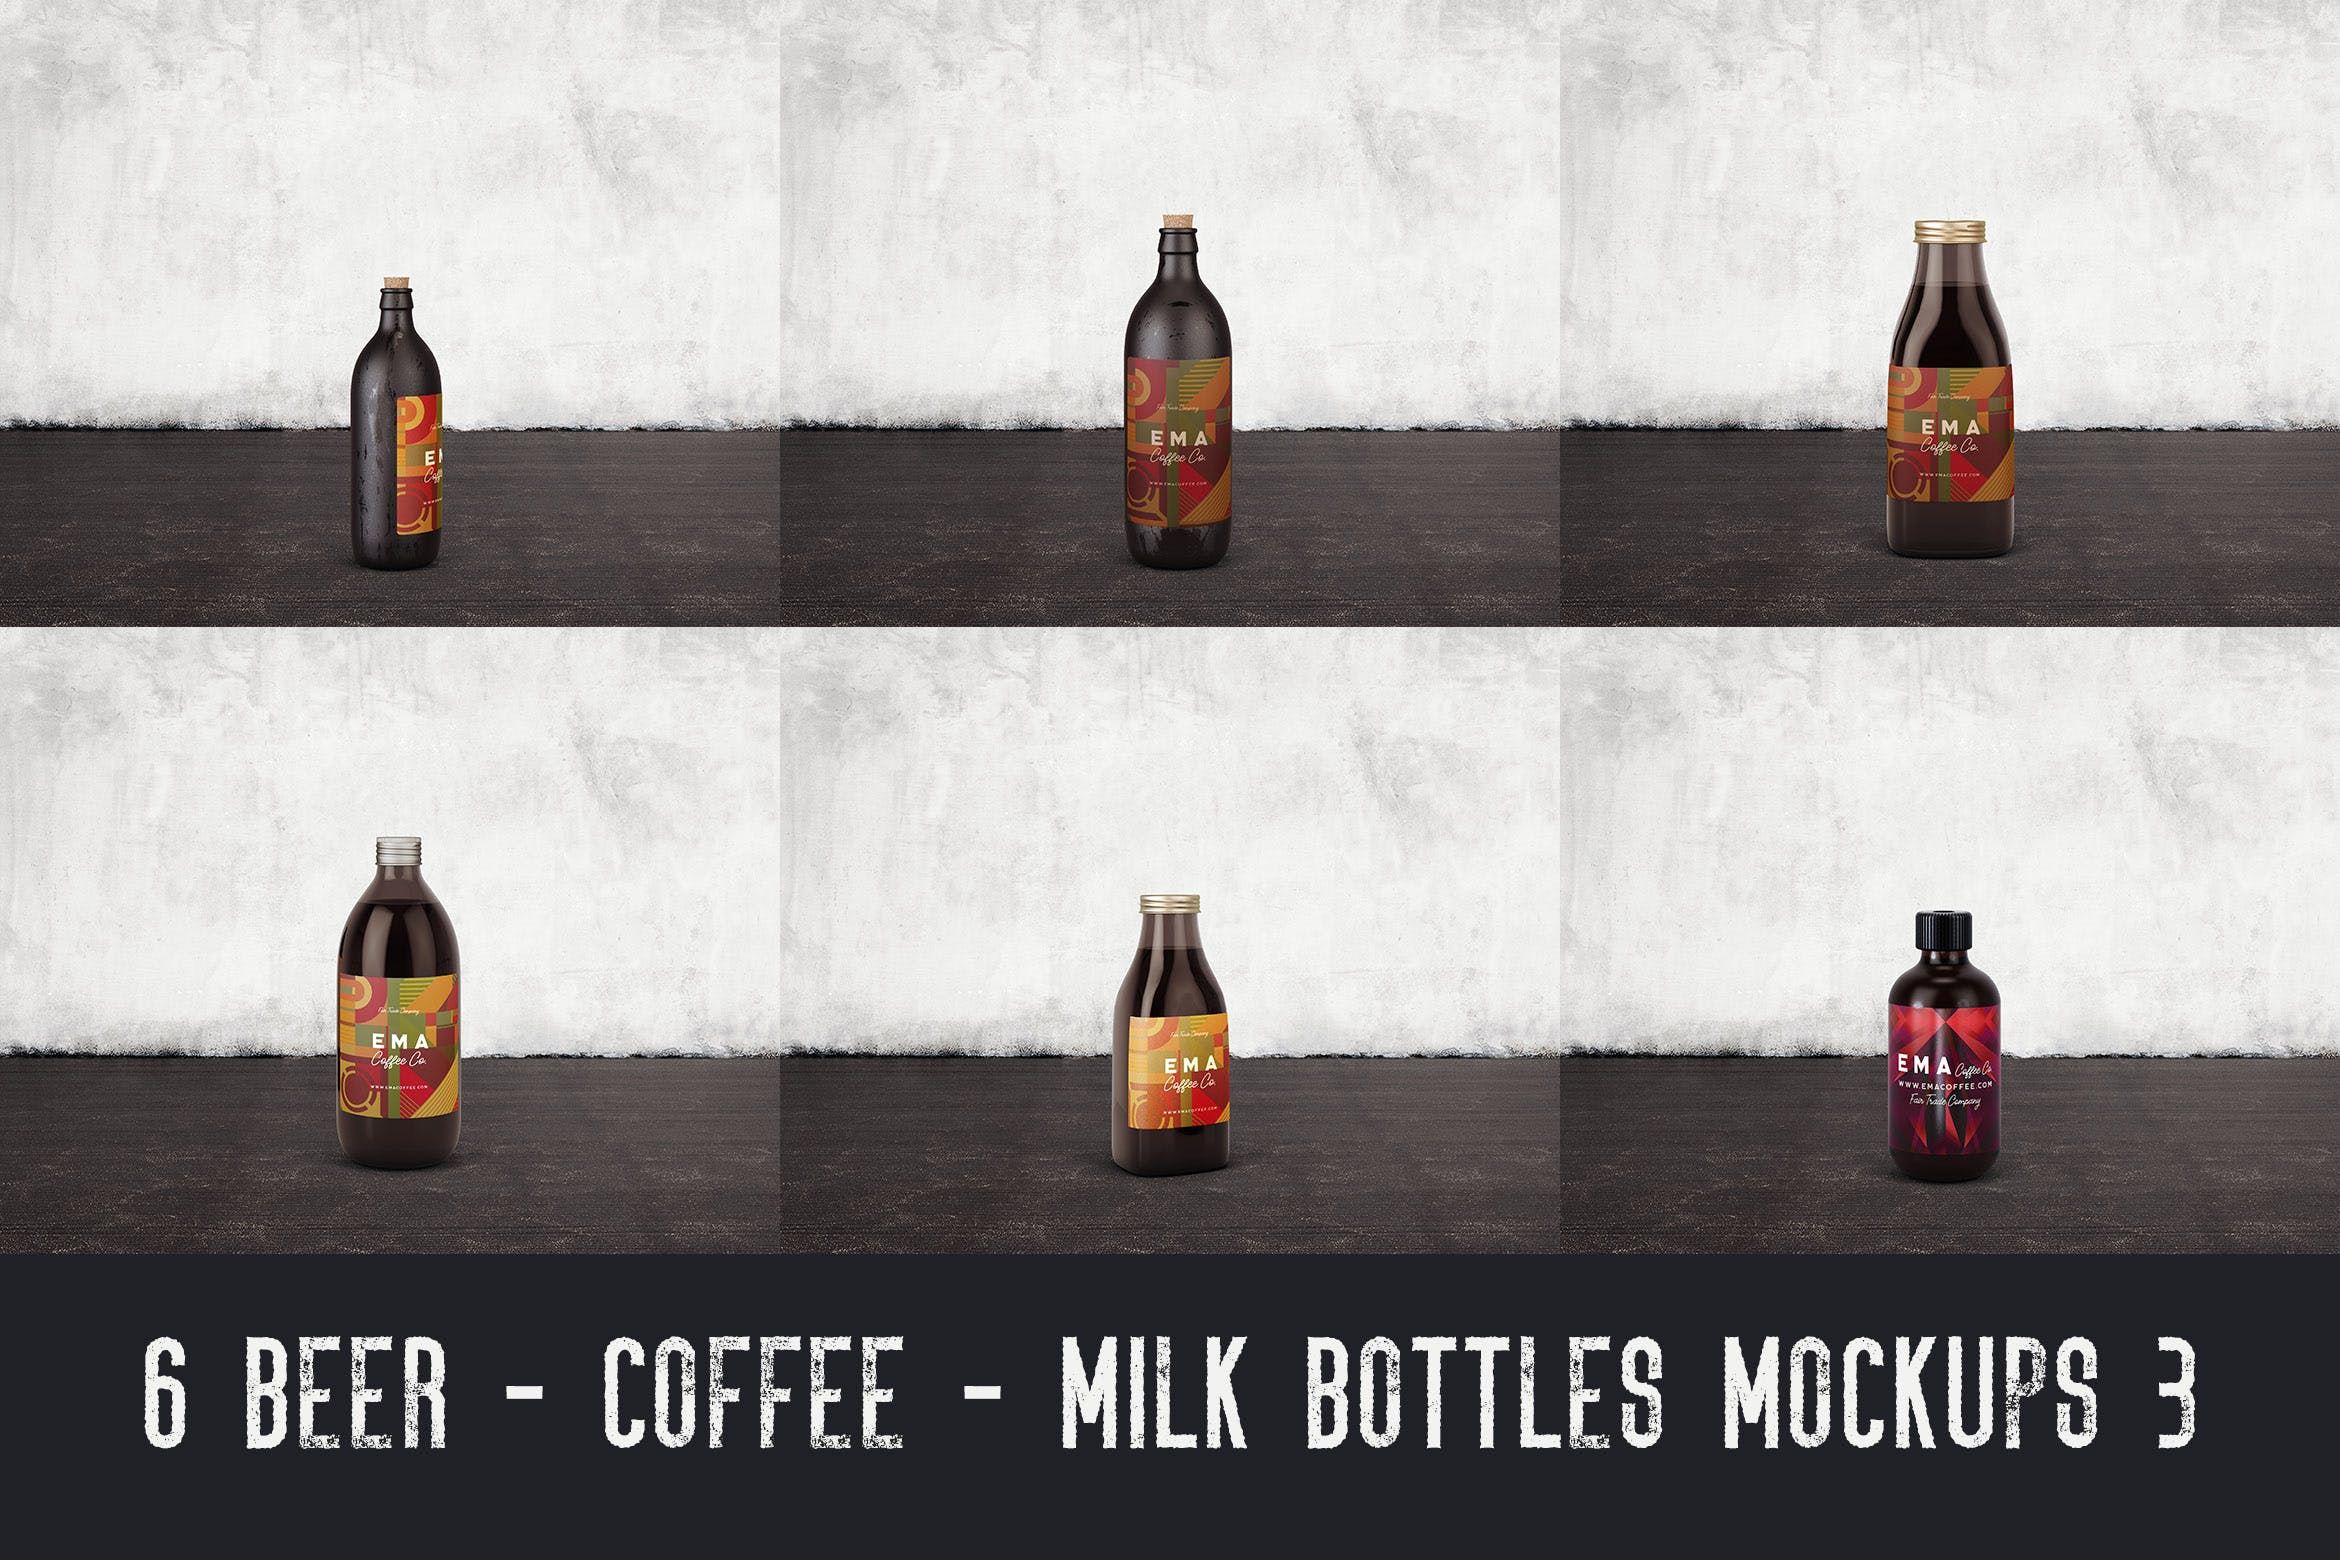 6个啤酒/咖啡/牛奶瓶外观设计素材中国精选v3 6 Beer Coffee Milk Bottles Mockups 3插图